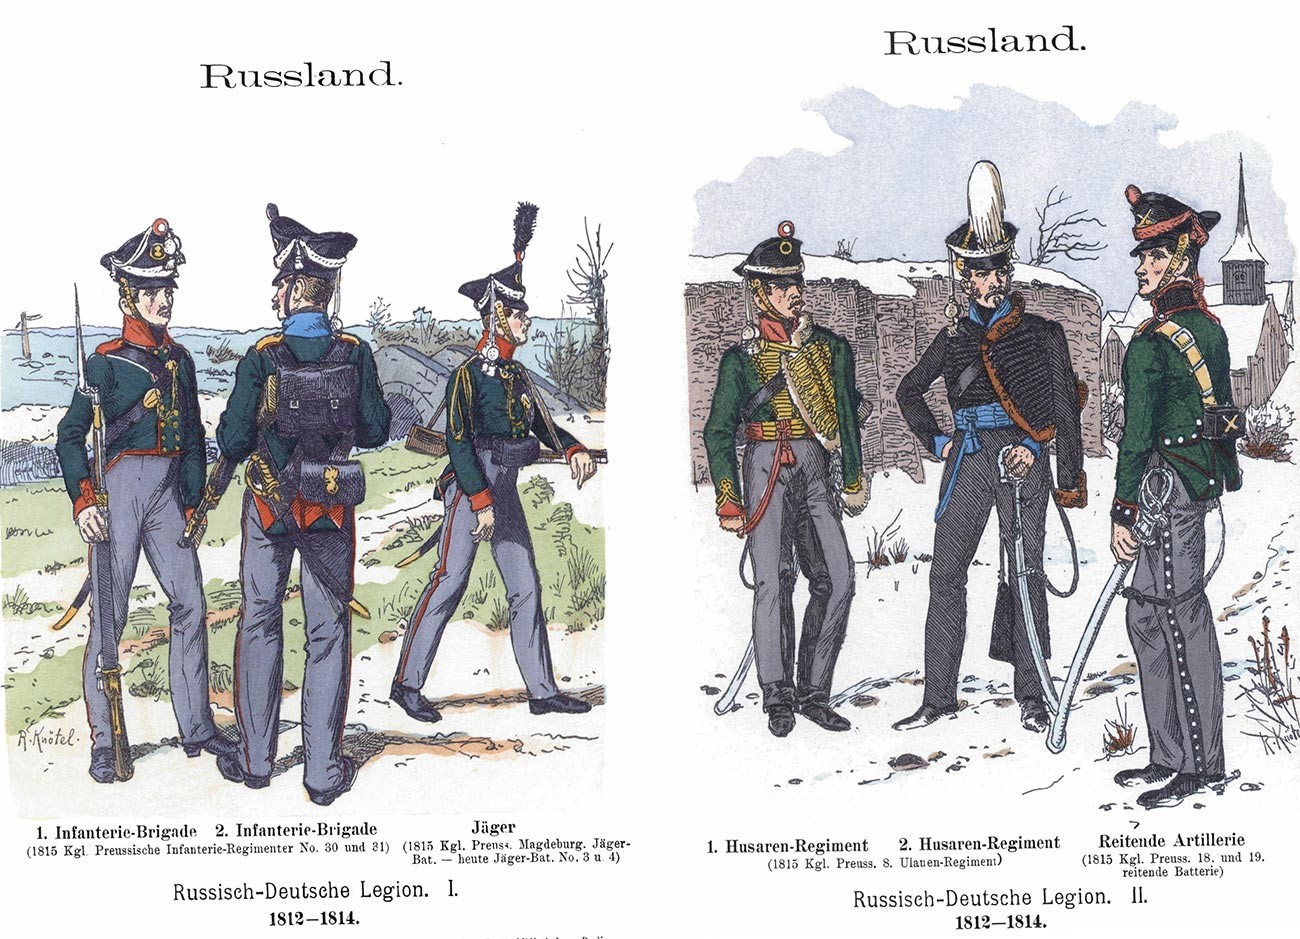 Rusko-nemška legija 1812-1814. Pehotna brigada in strelec (Jäger); 2. huzarski polk, konjeniška artilerija